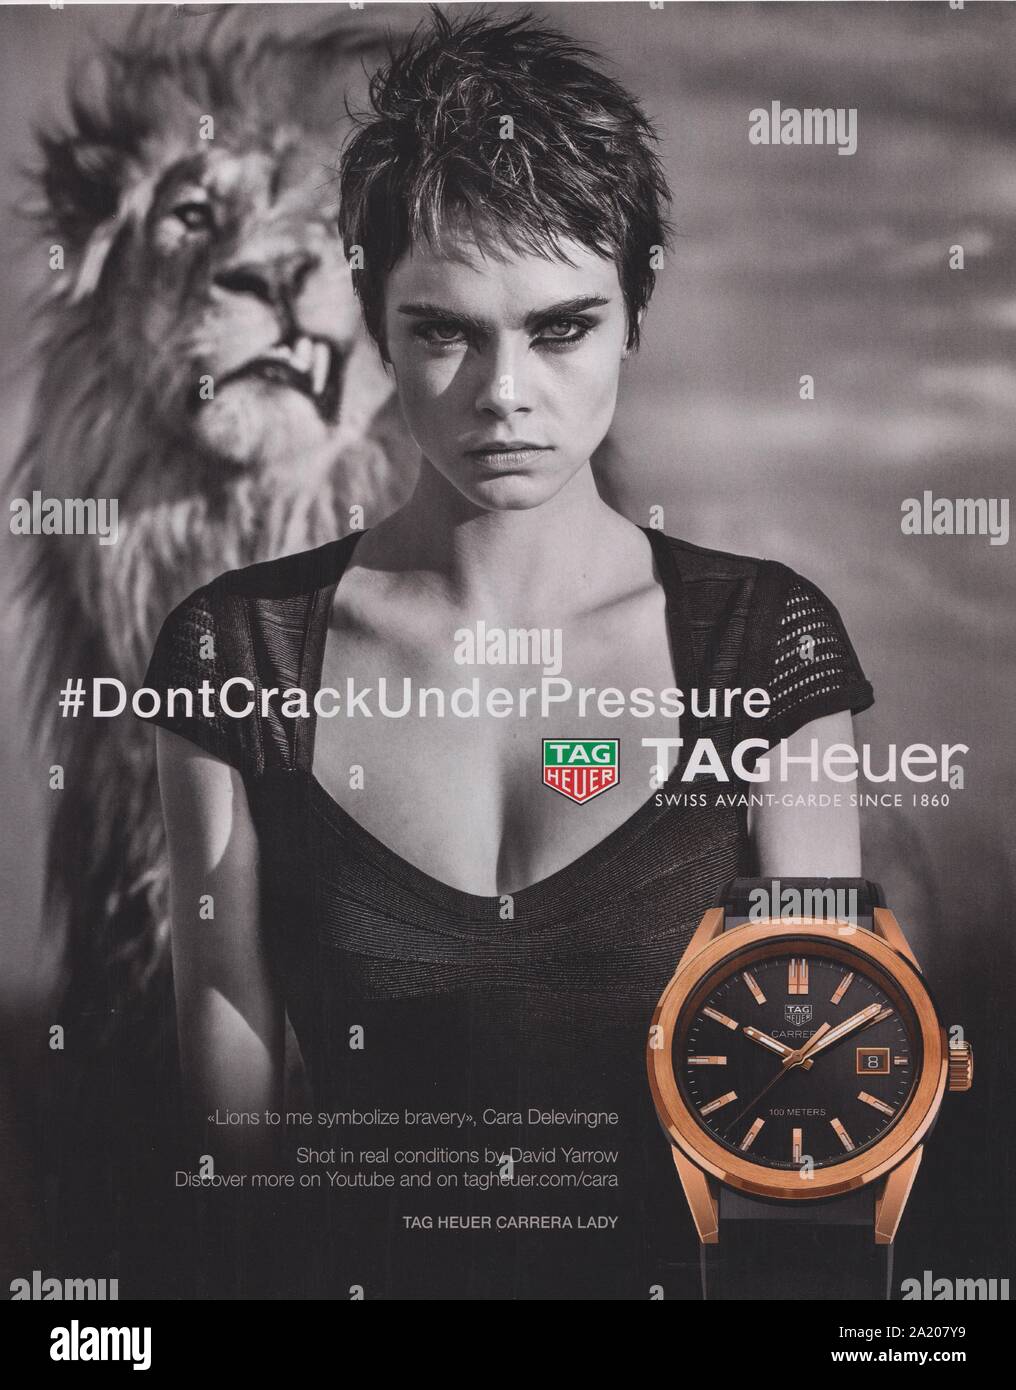 Plakat werbung TAG Heuer Uhren mit Cara Delevingne im Magazin von 2018,  NICHT KNACKEN UNTER PRESSUERE Slogan, Werbung, kreative Werbung  Stockfotografie - Alamy